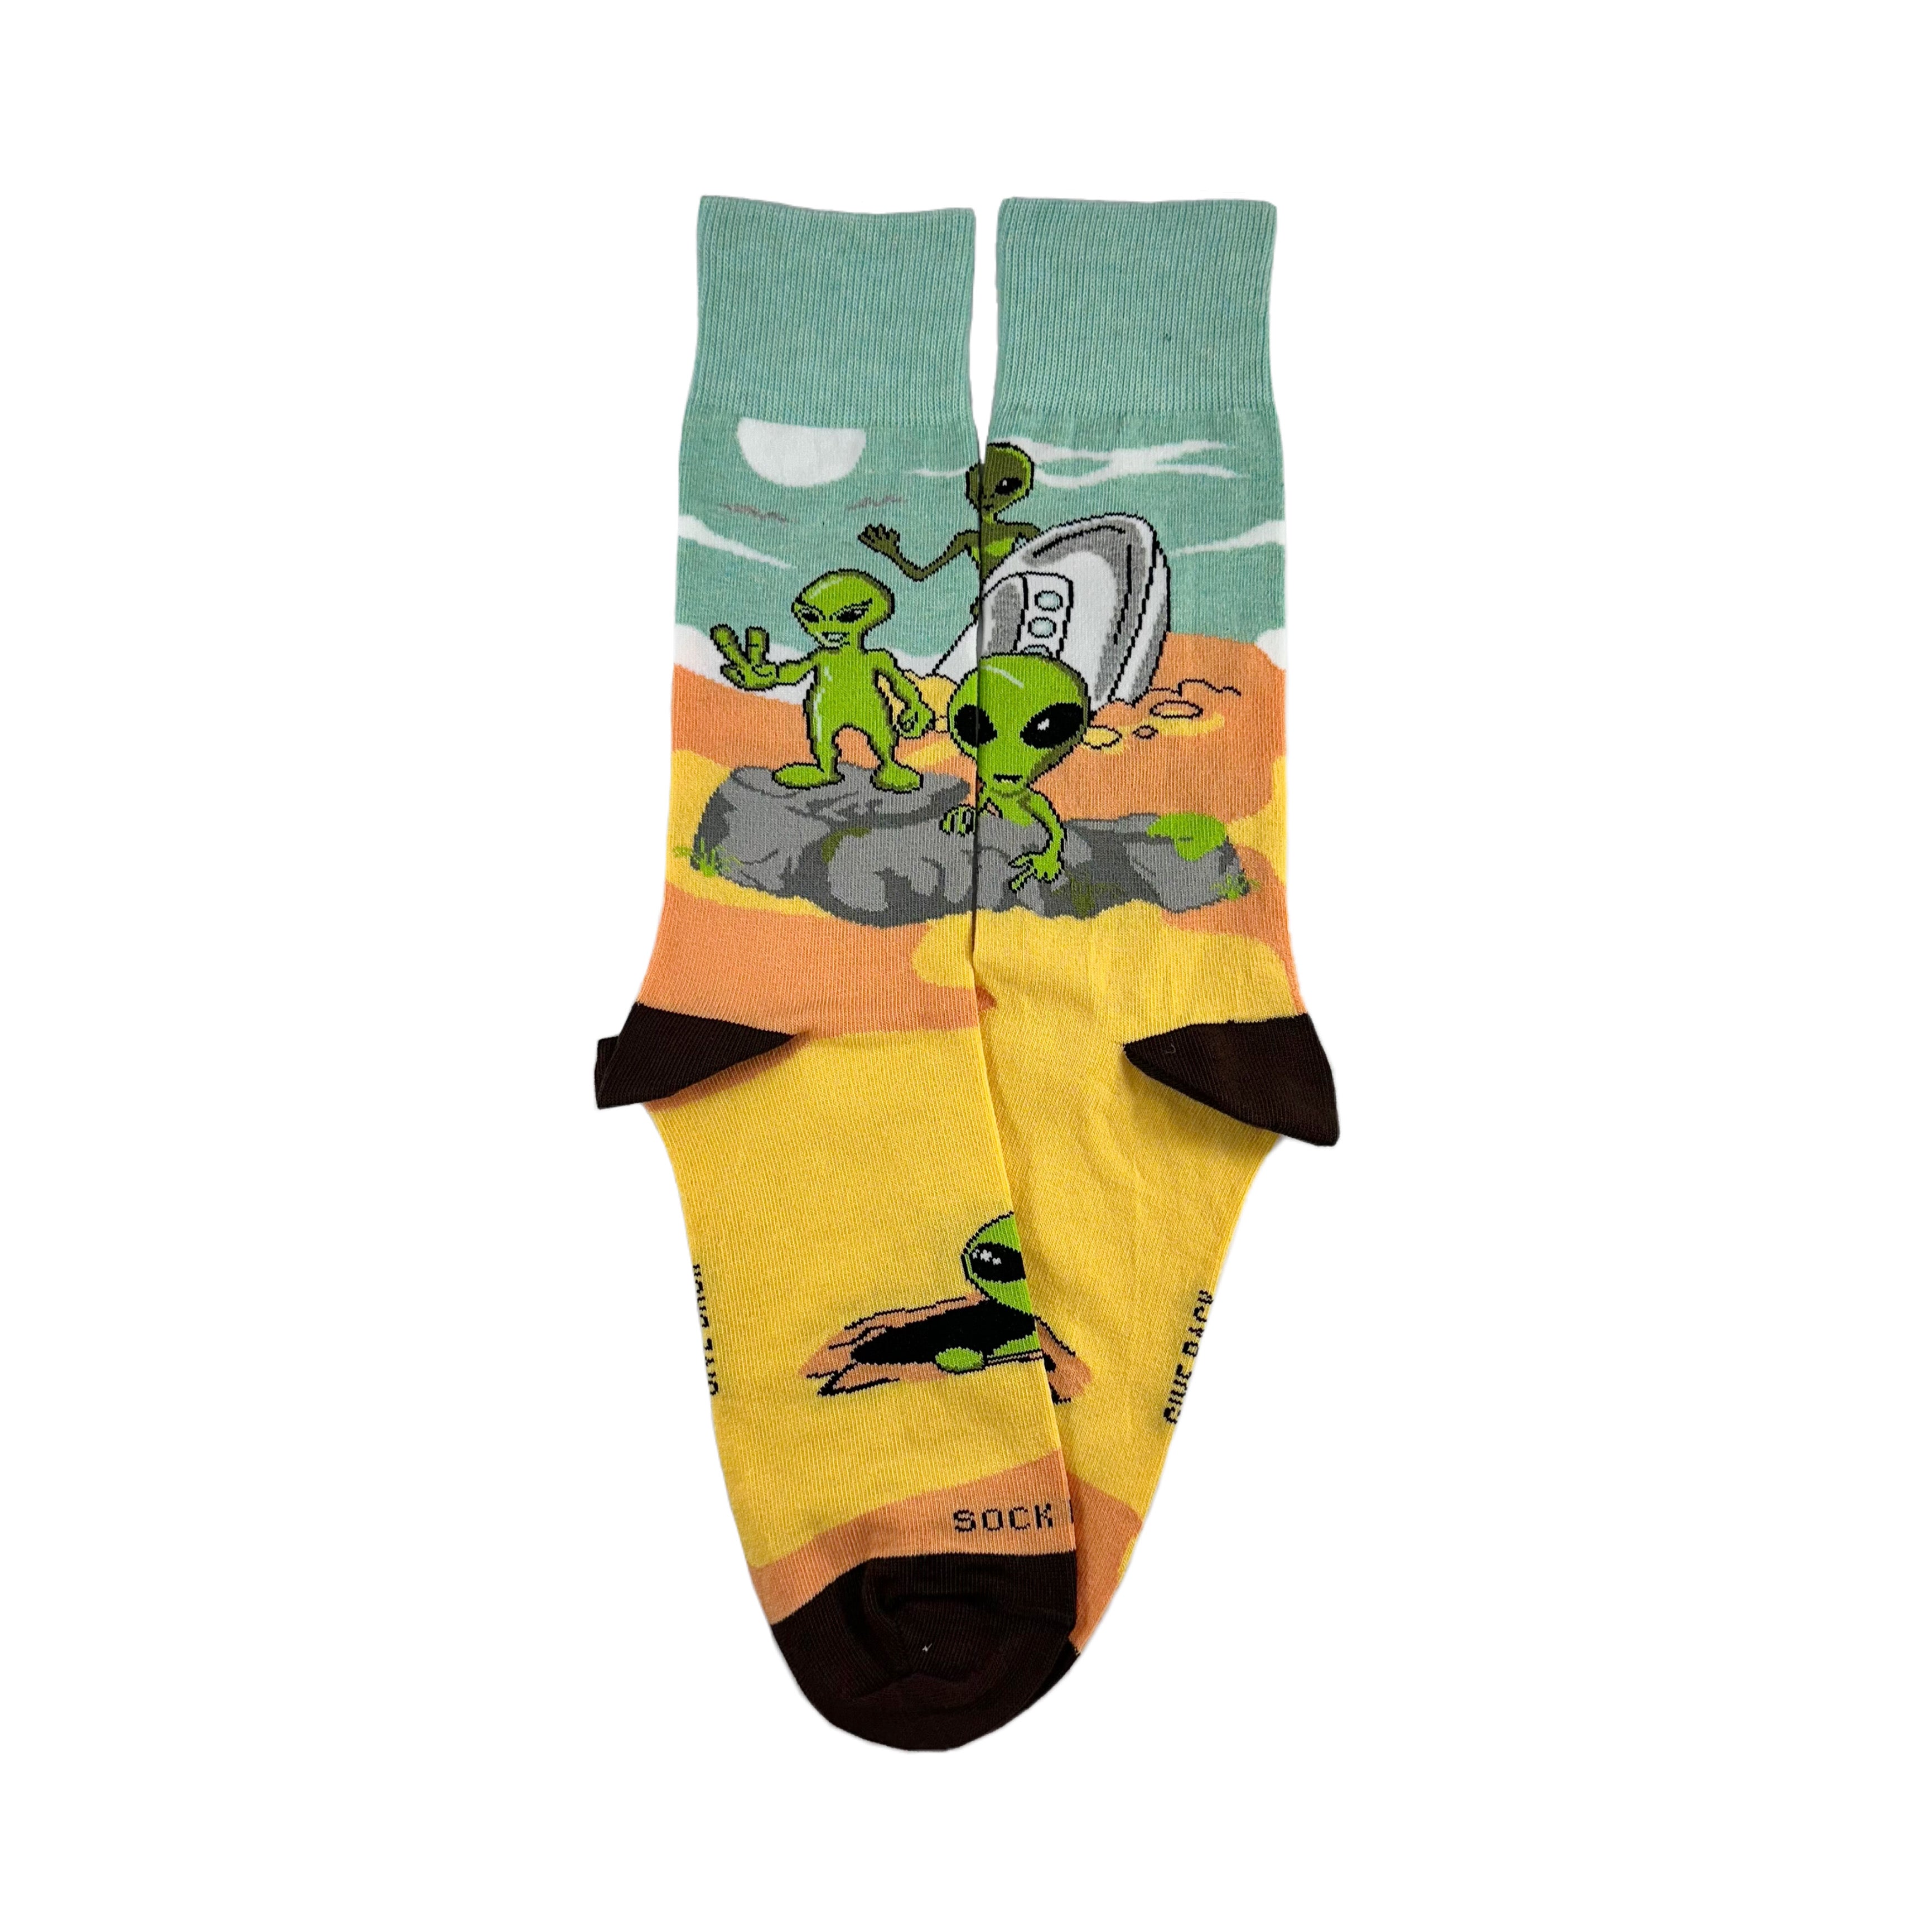 Alien Desert Crash Landing Socks from the Sock Panda